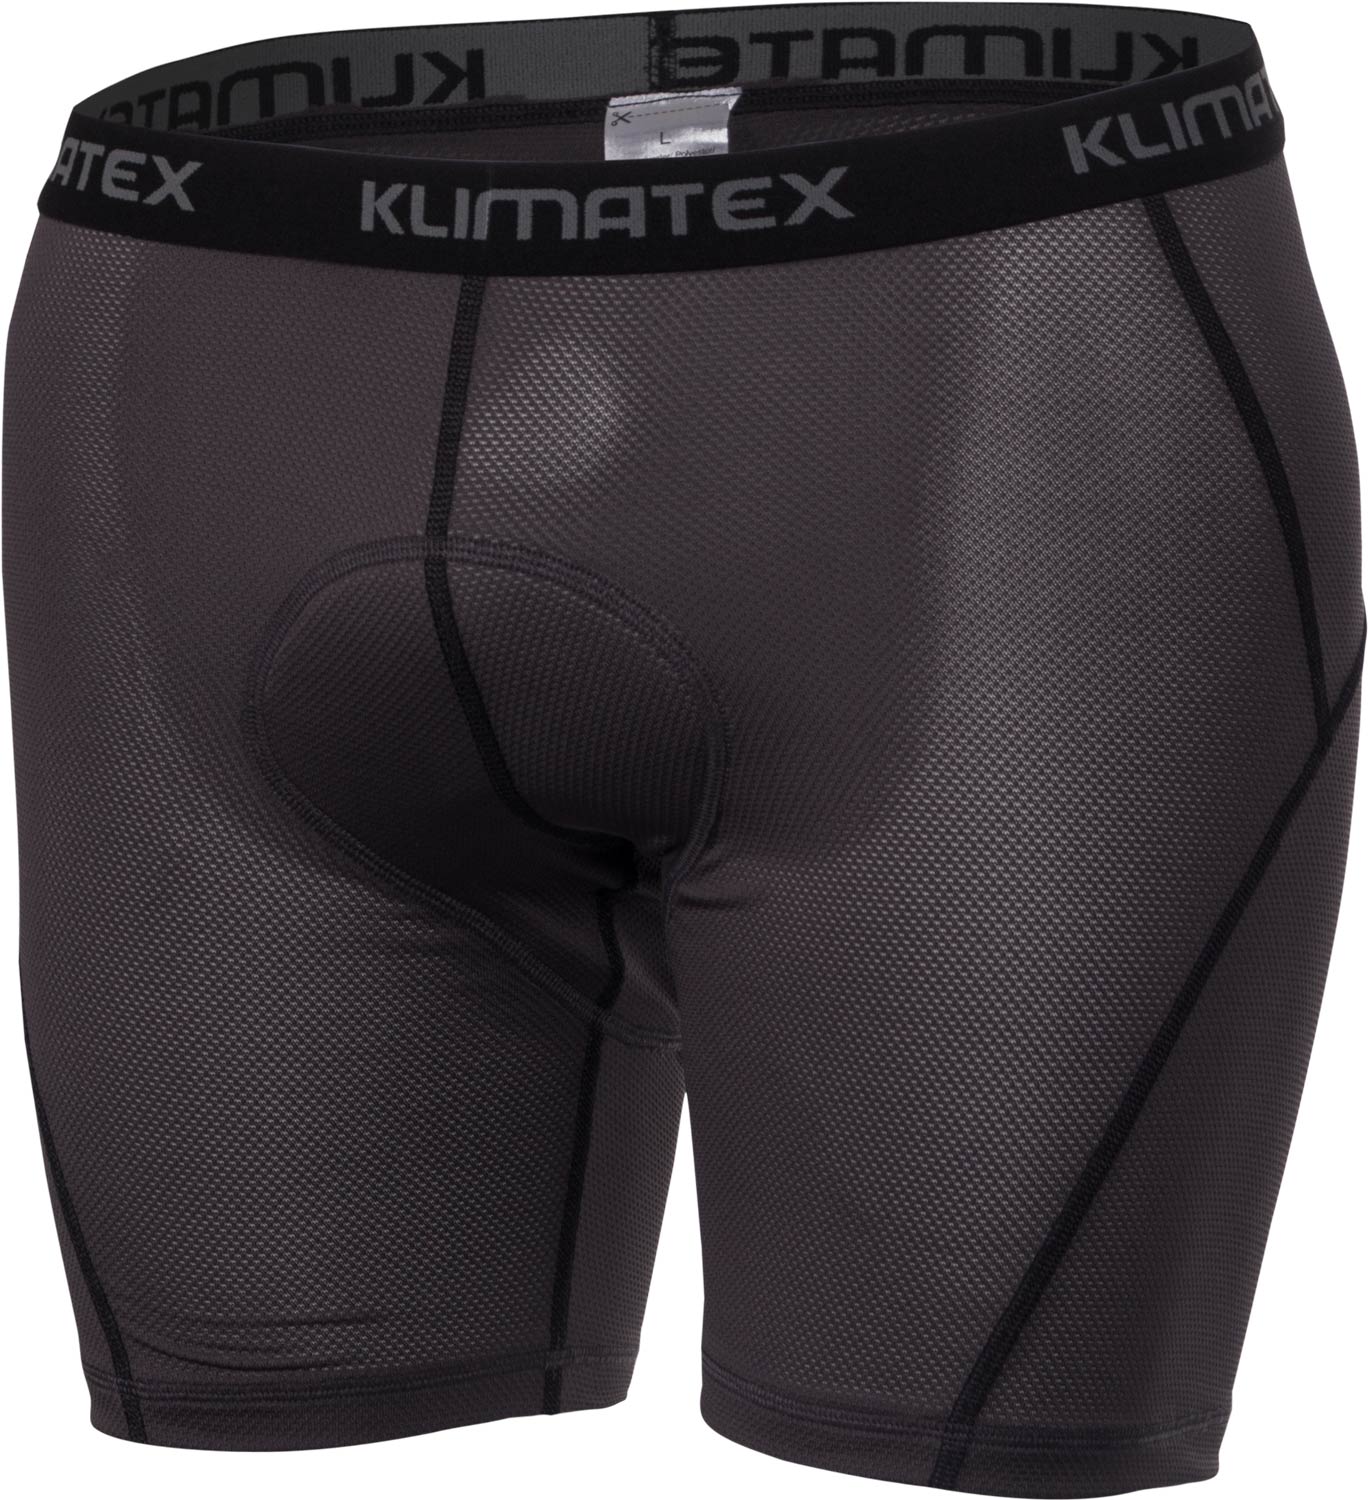 Men’s cycling underwear